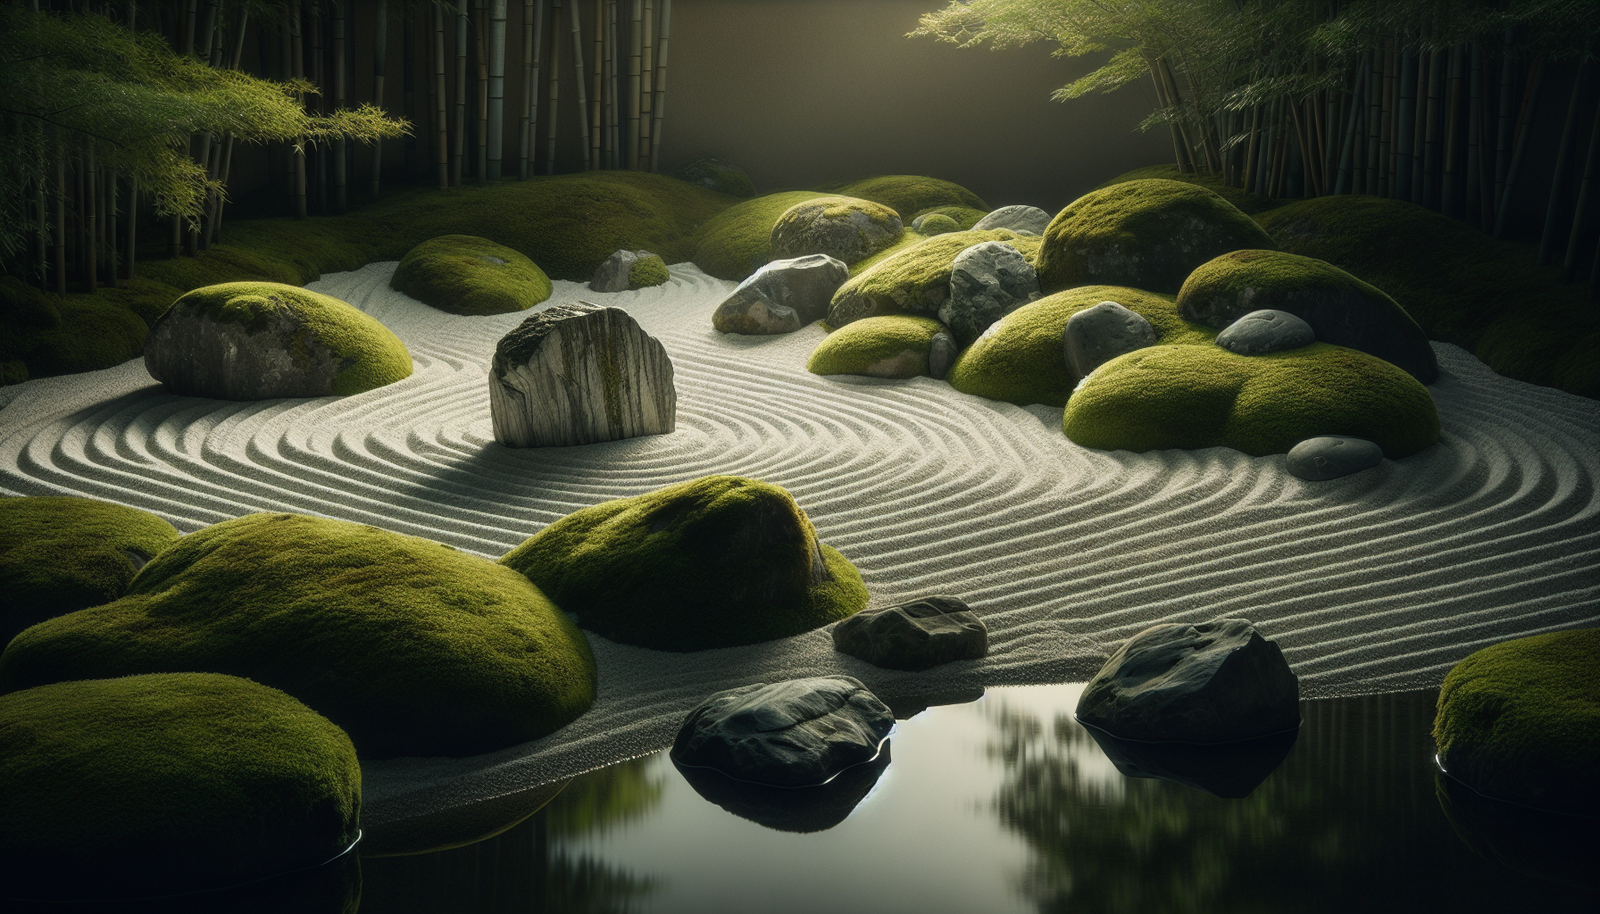 creating a zen garden elements and design principles 4